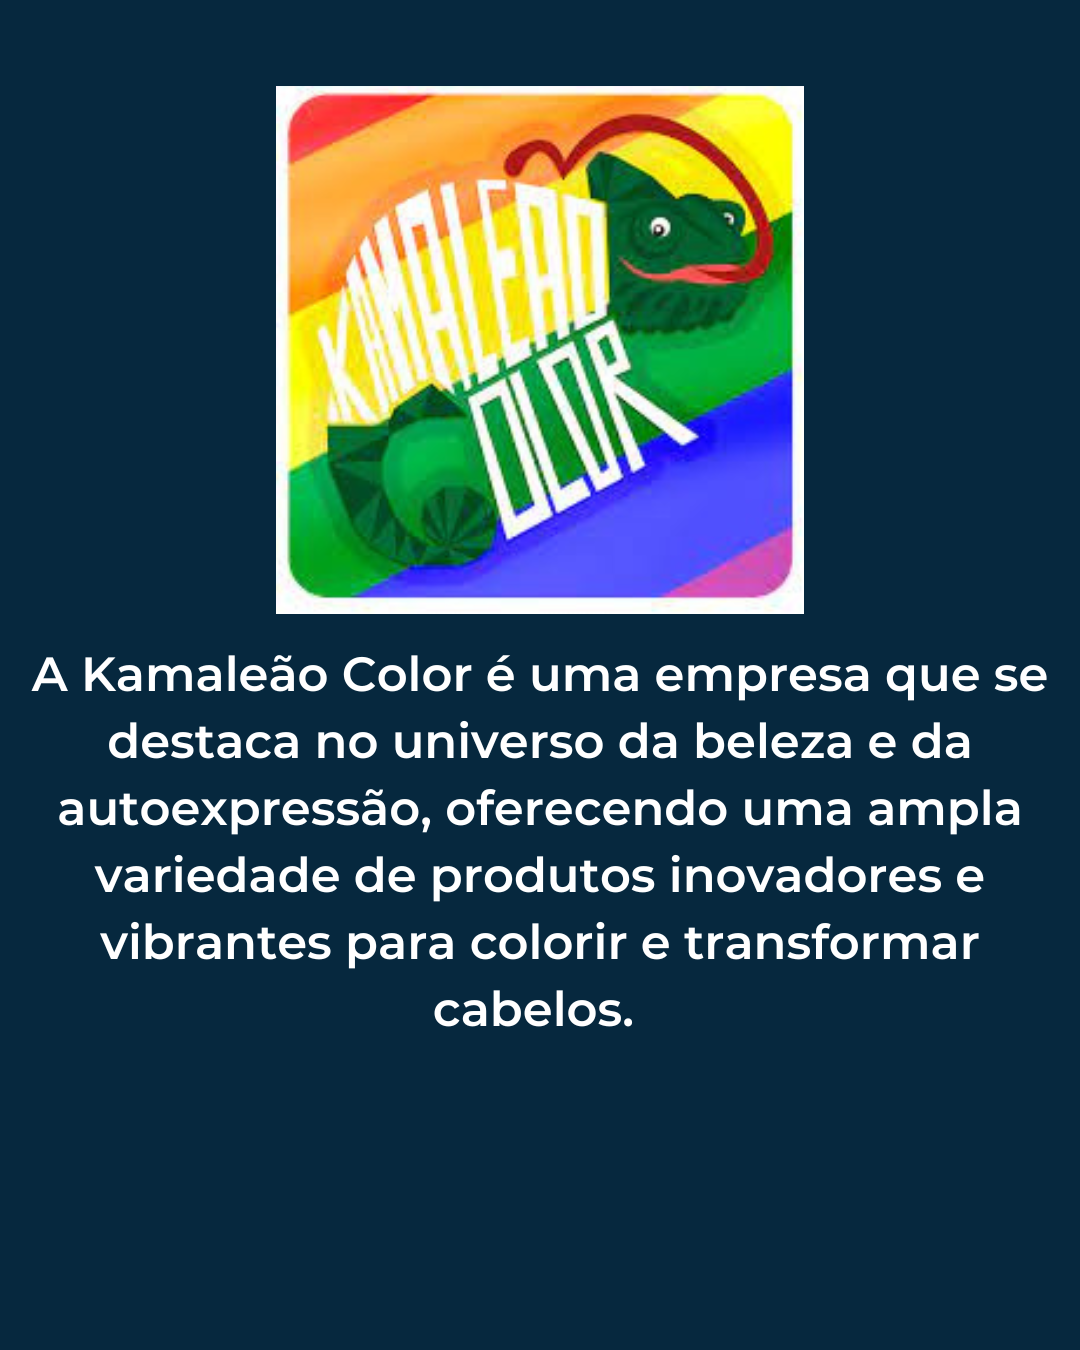 Kamaleao Color